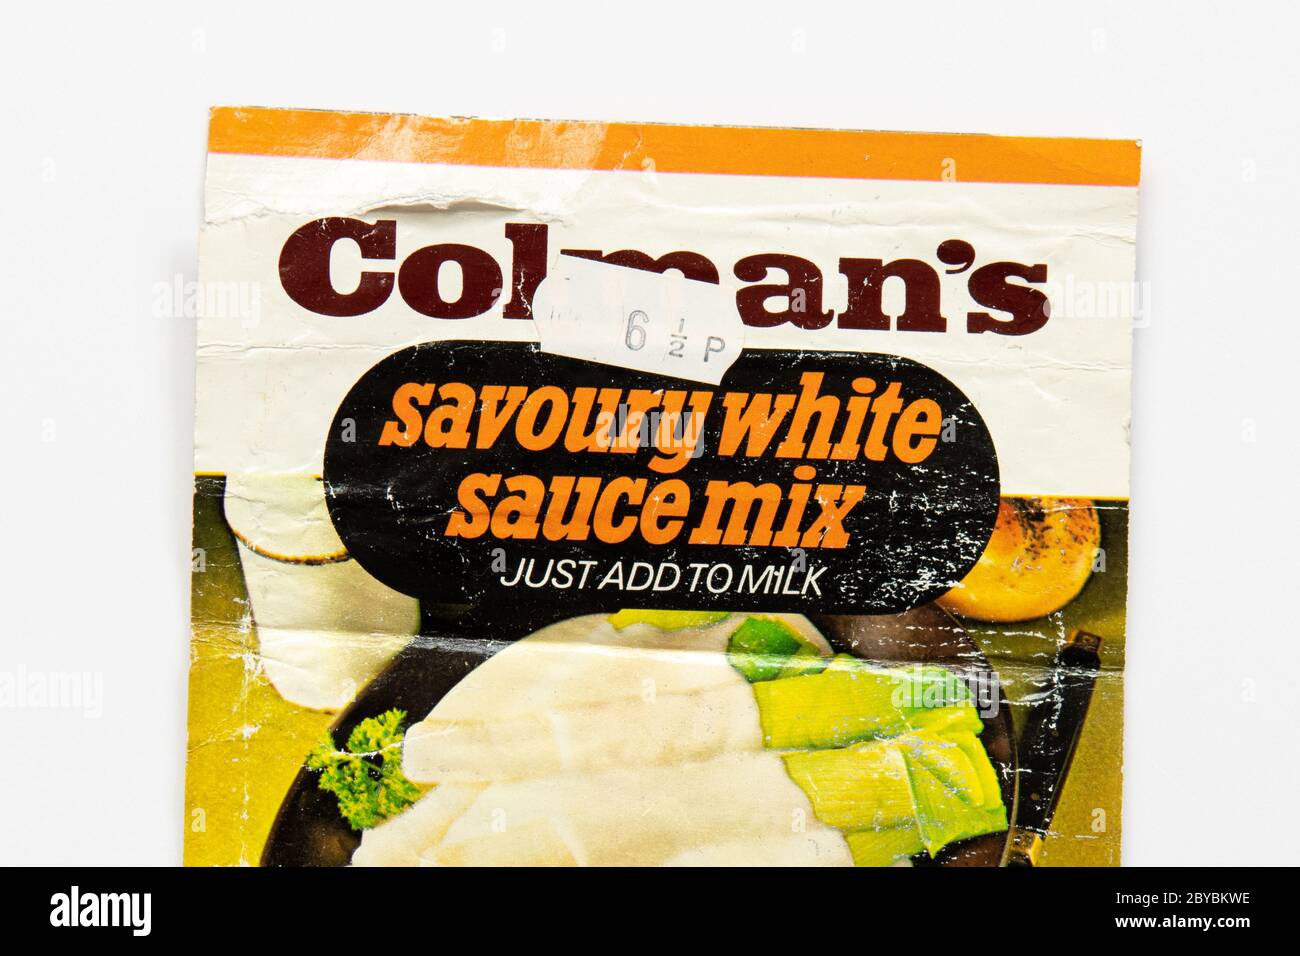 Pacchetto di mix di salsa bianca salata vintage Colmans con adesivo prezzo 6 e mezzo pence - Regno Unito Foto Stock